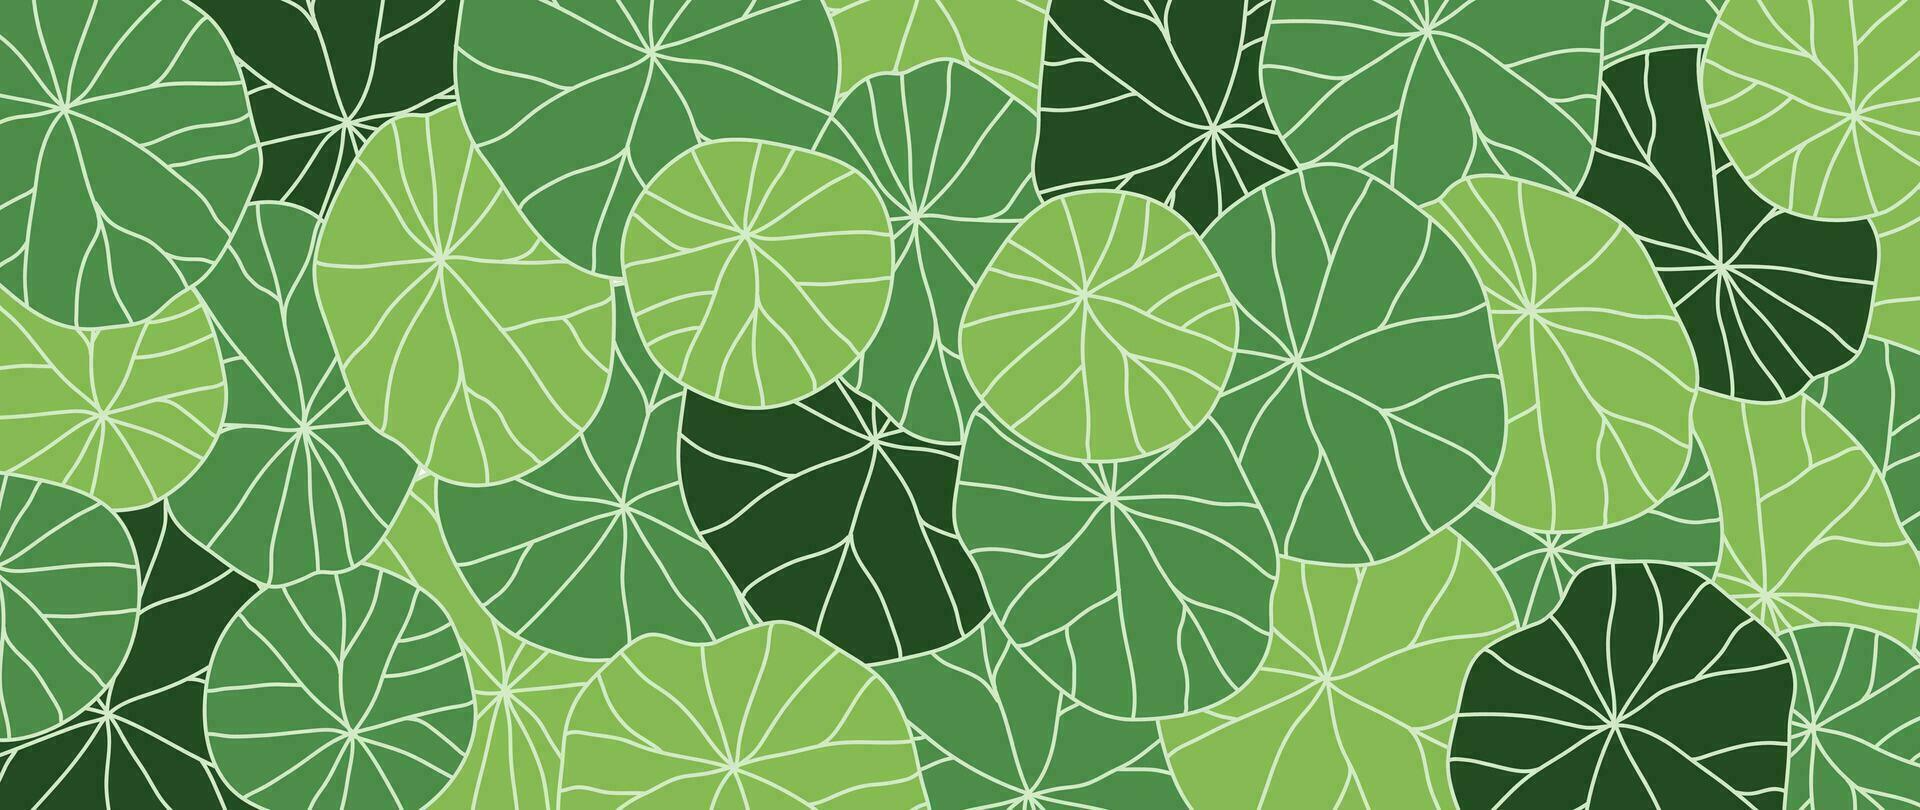 abstrakt lövverk linje konst vektor bakgrund. blad tapet av tropisk löv, lotus blad, växter i hand dragen mönster. botanisk djungel illustrerade för baner, grafik, dekoration, tyg.